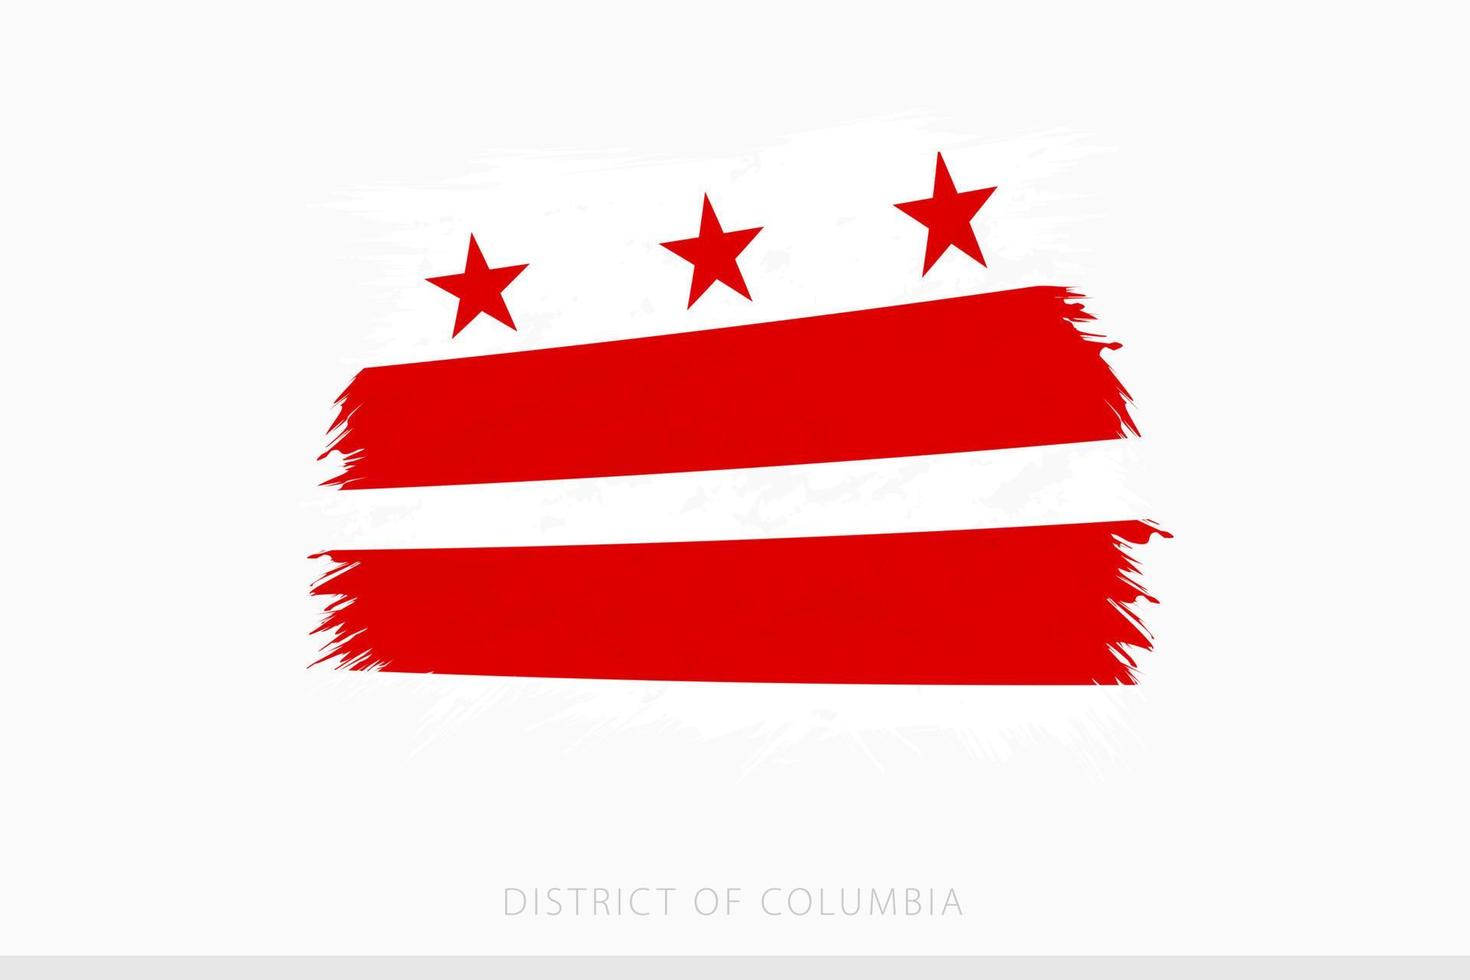 grunge flagga av distrikt av columbia, vektor abstrakt grunge borstat flagga av distrikt av columbia.